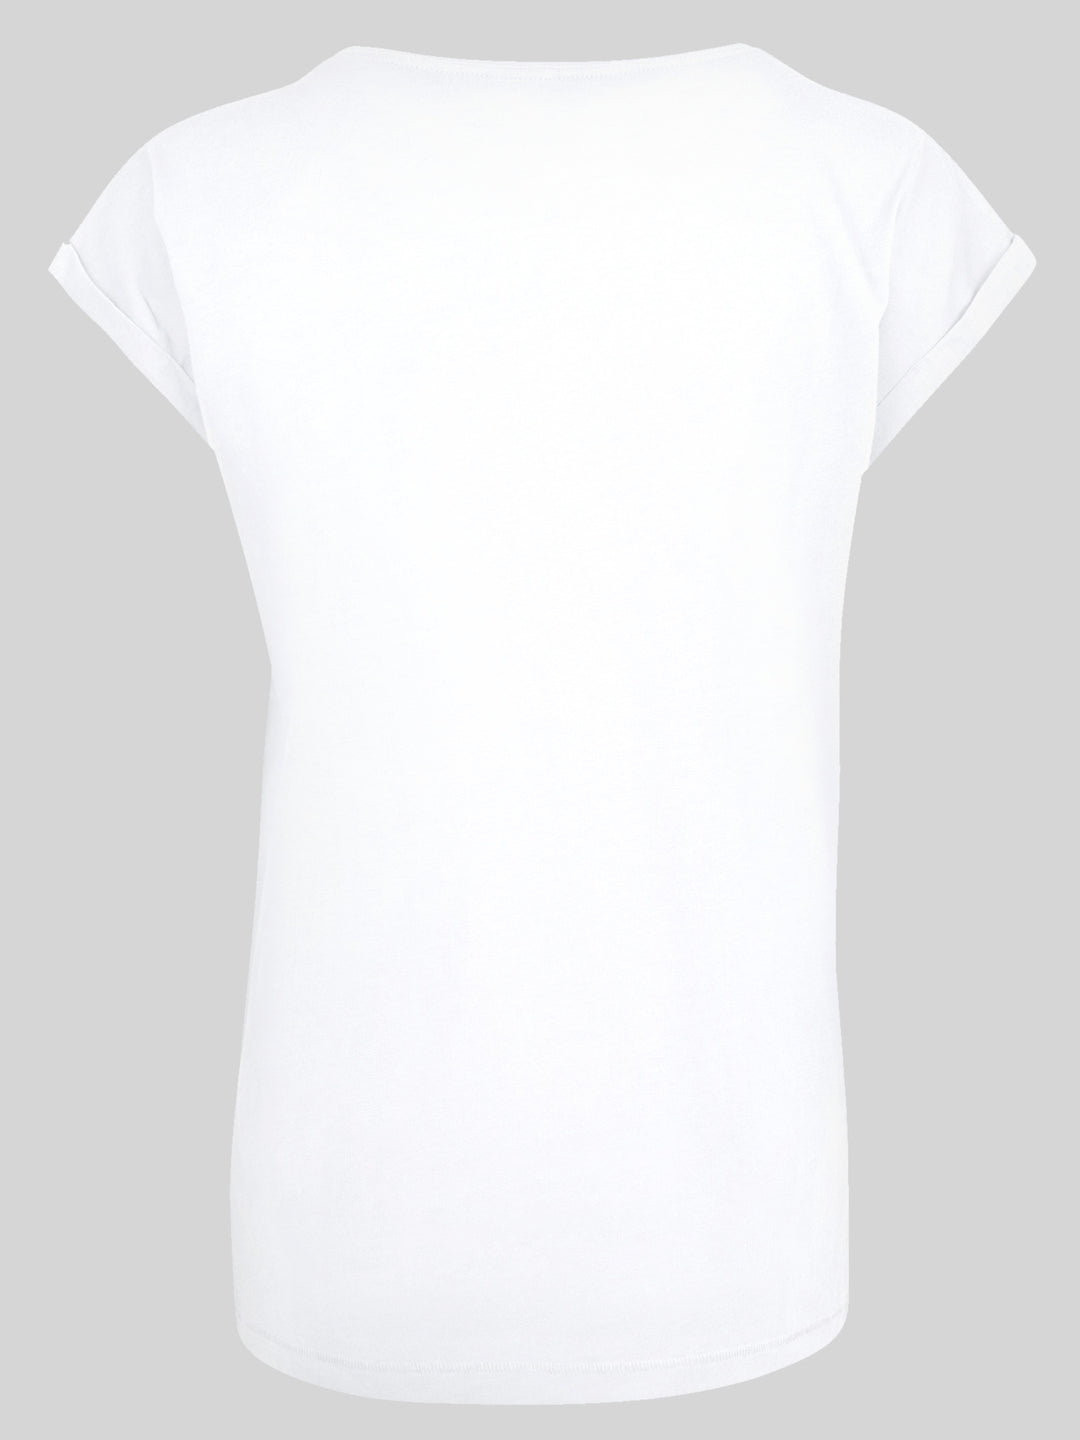 David Bowie T-Shirt | Aladdin Sane Lightning Bolt | Premium Kurzarm Damen T Shirt